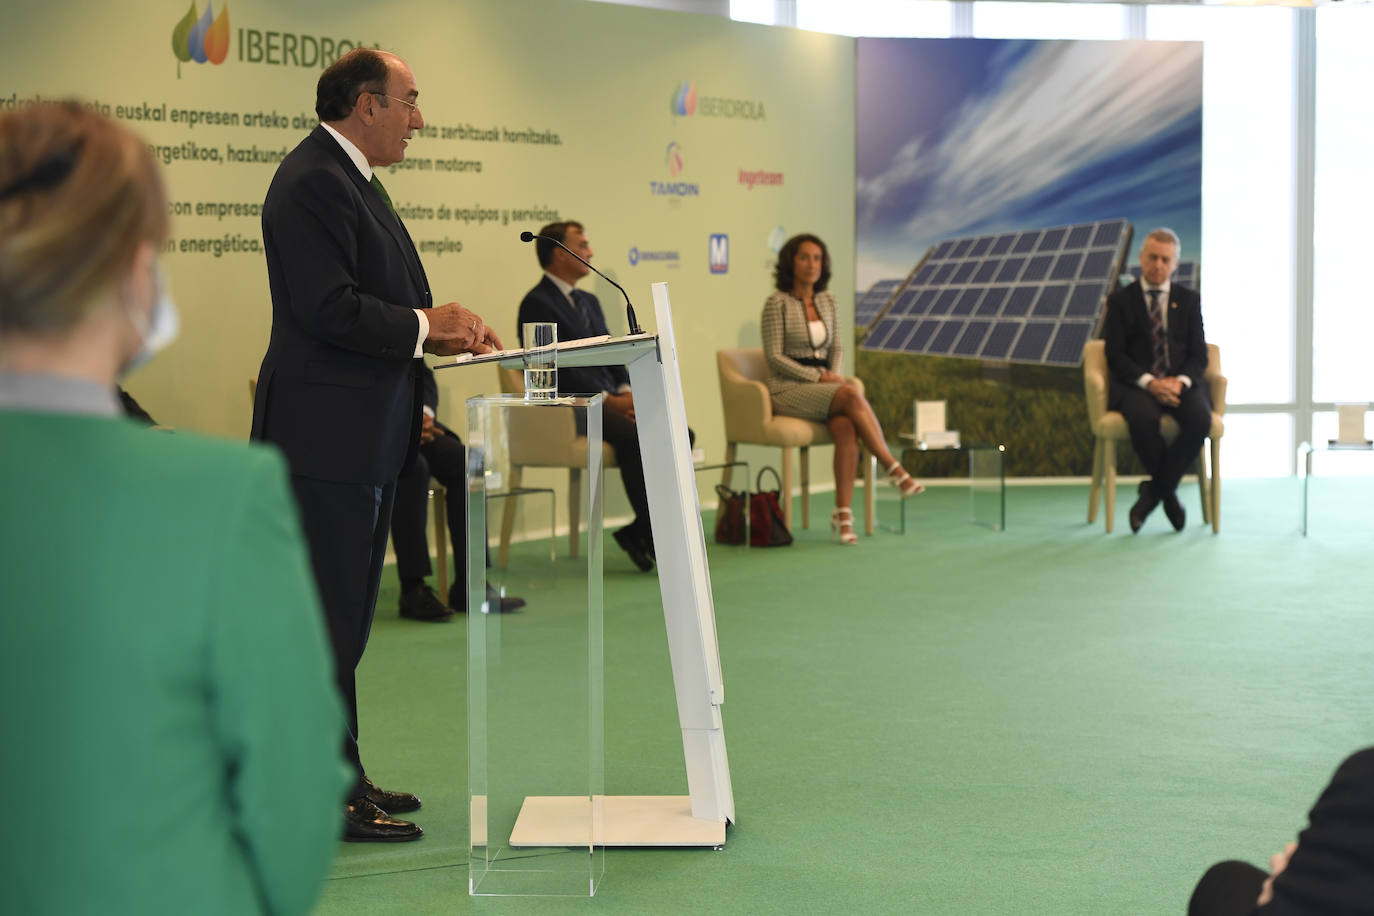 El presidente de la eléctrica anunció el acuerdo alcanzado por el Grupo Iberdrola con cinco empresas vascas.